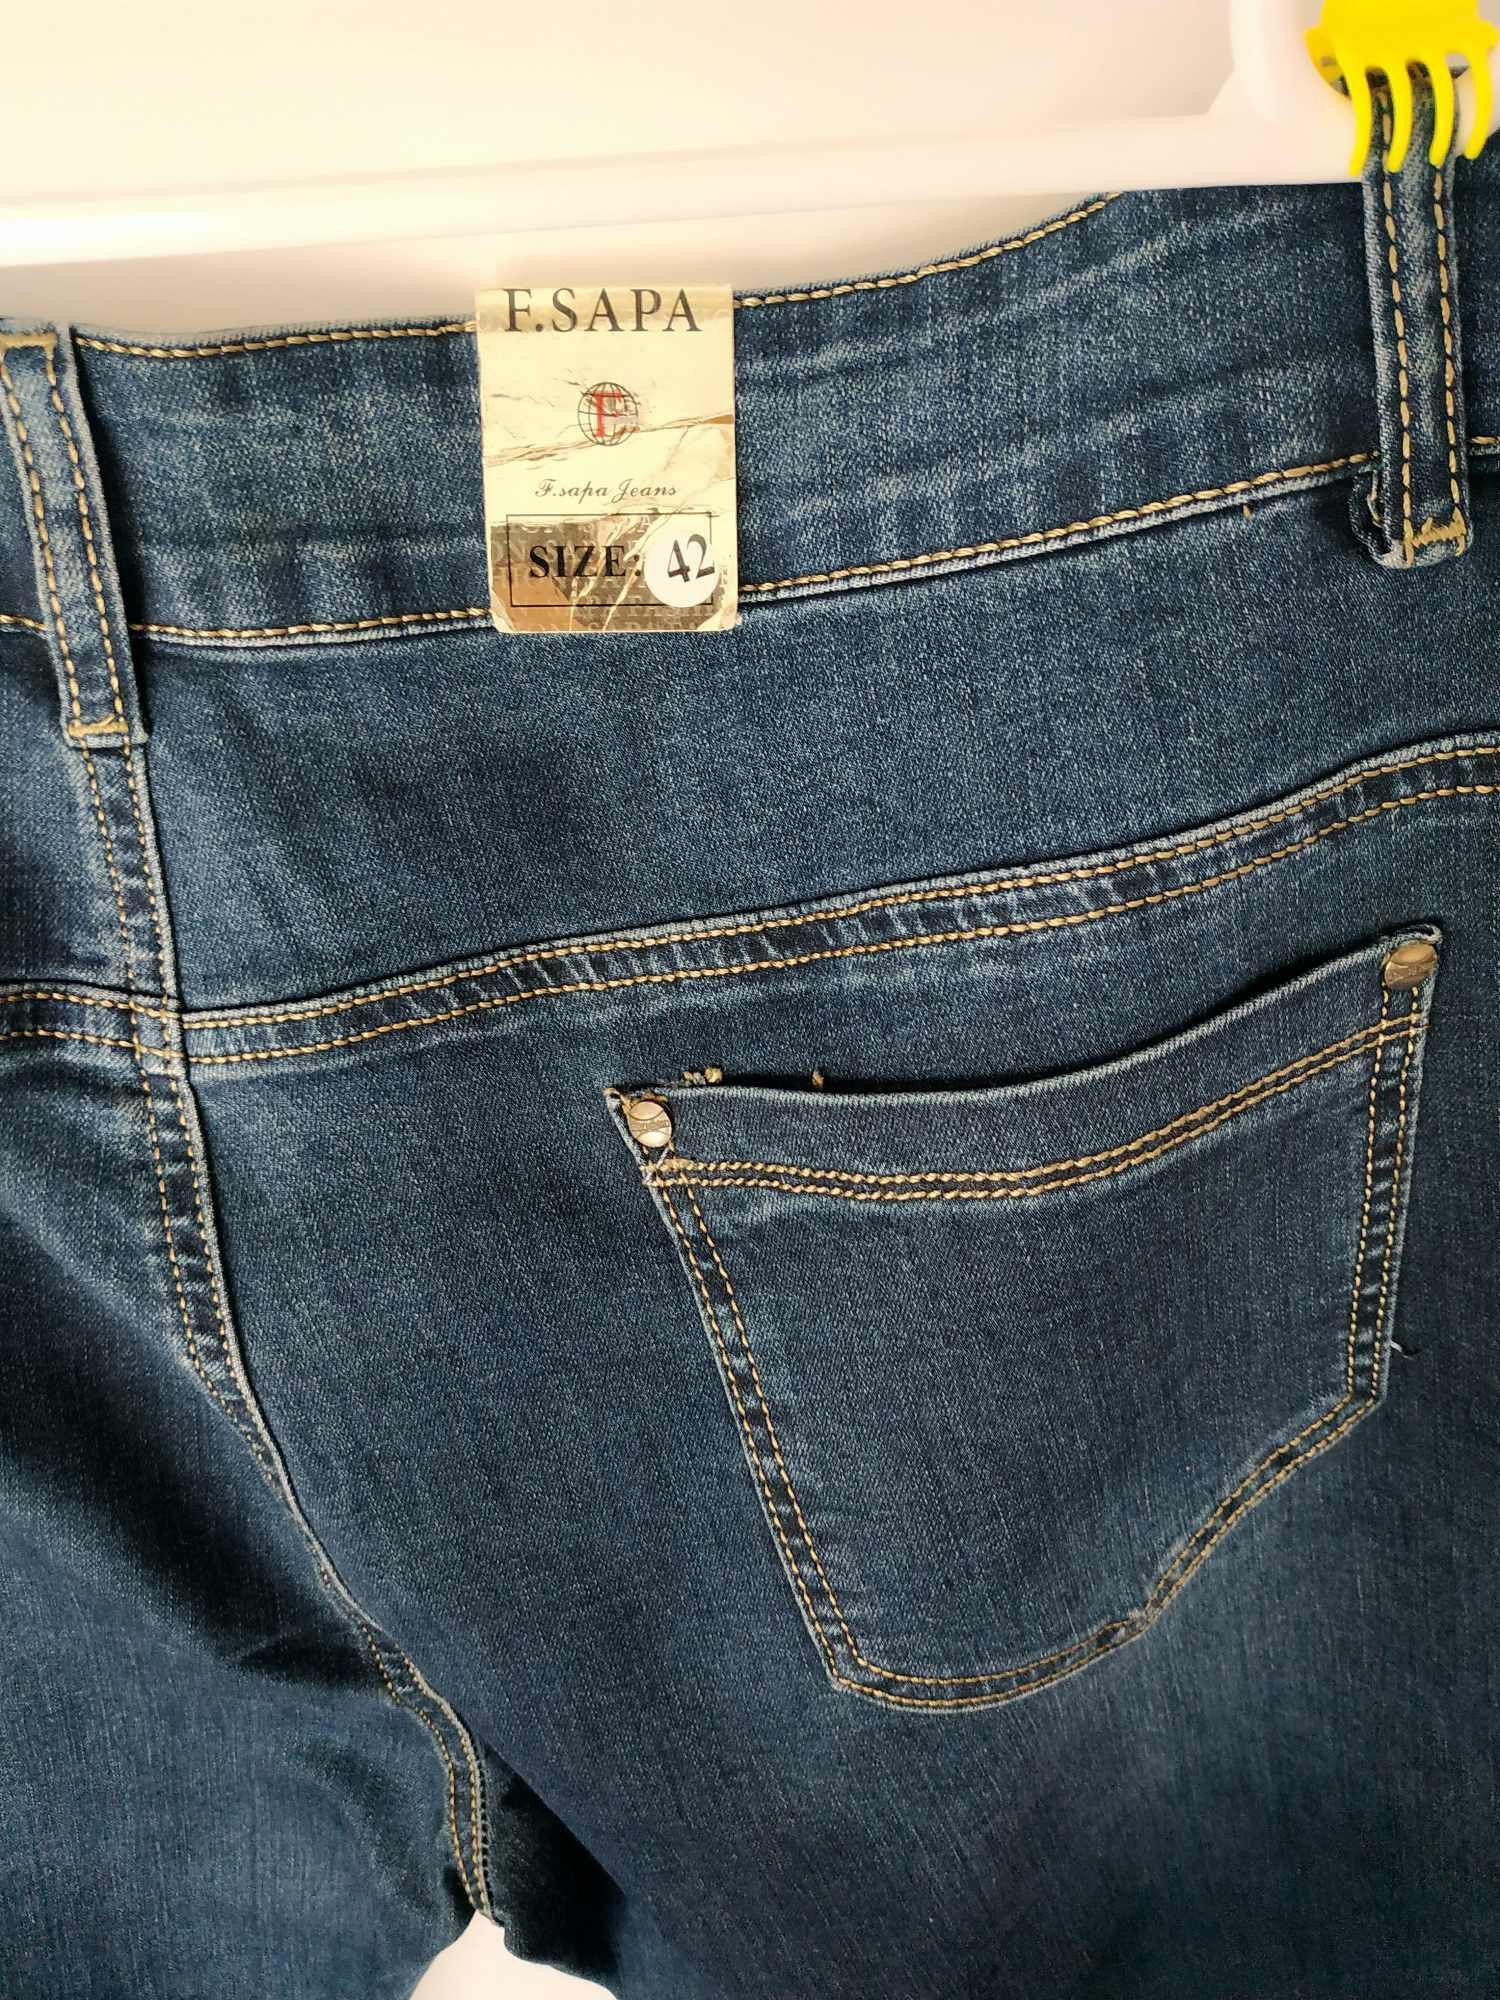 Spodnie nowe dżinsowe damskie 42 duży rozmiar